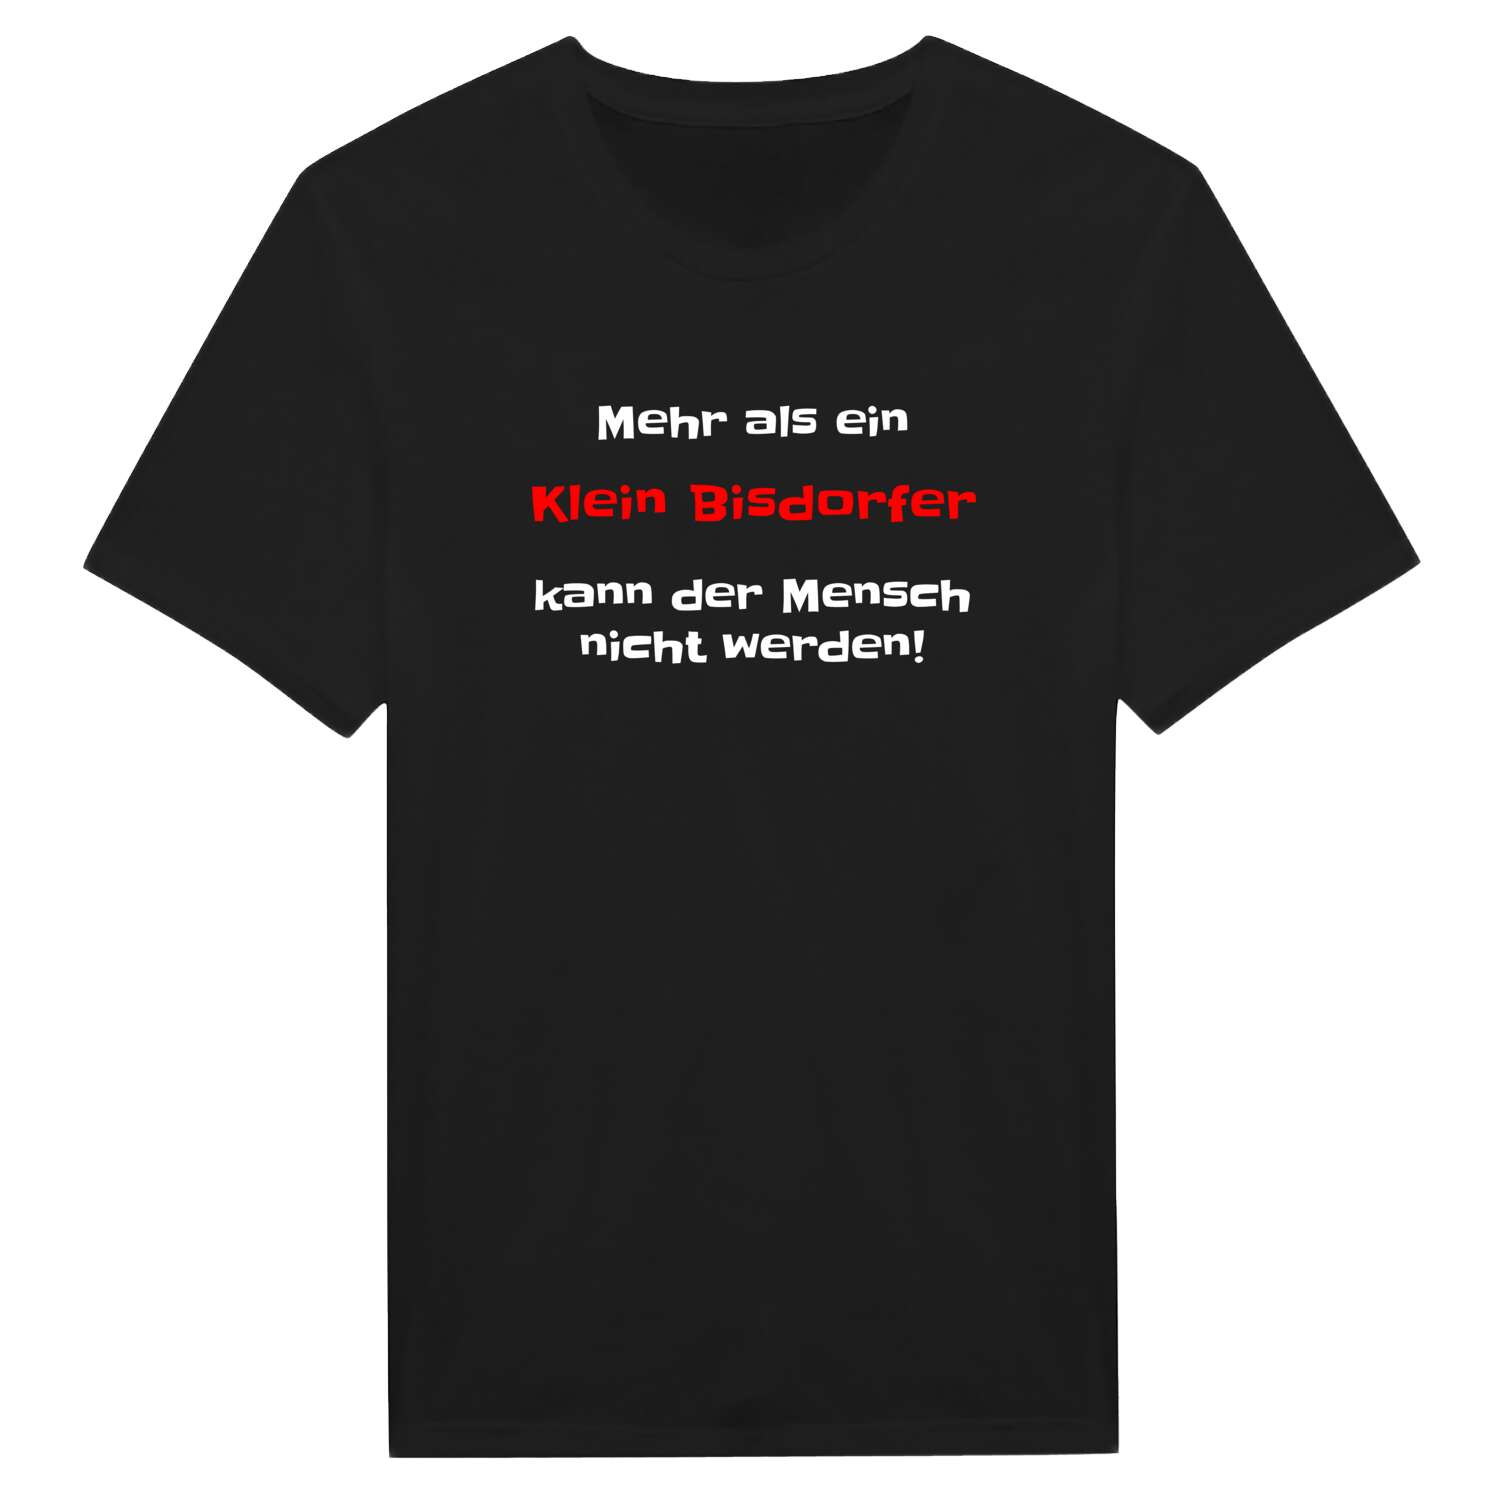 Klein Bisdorf T-Shirt »Mehr als ein«